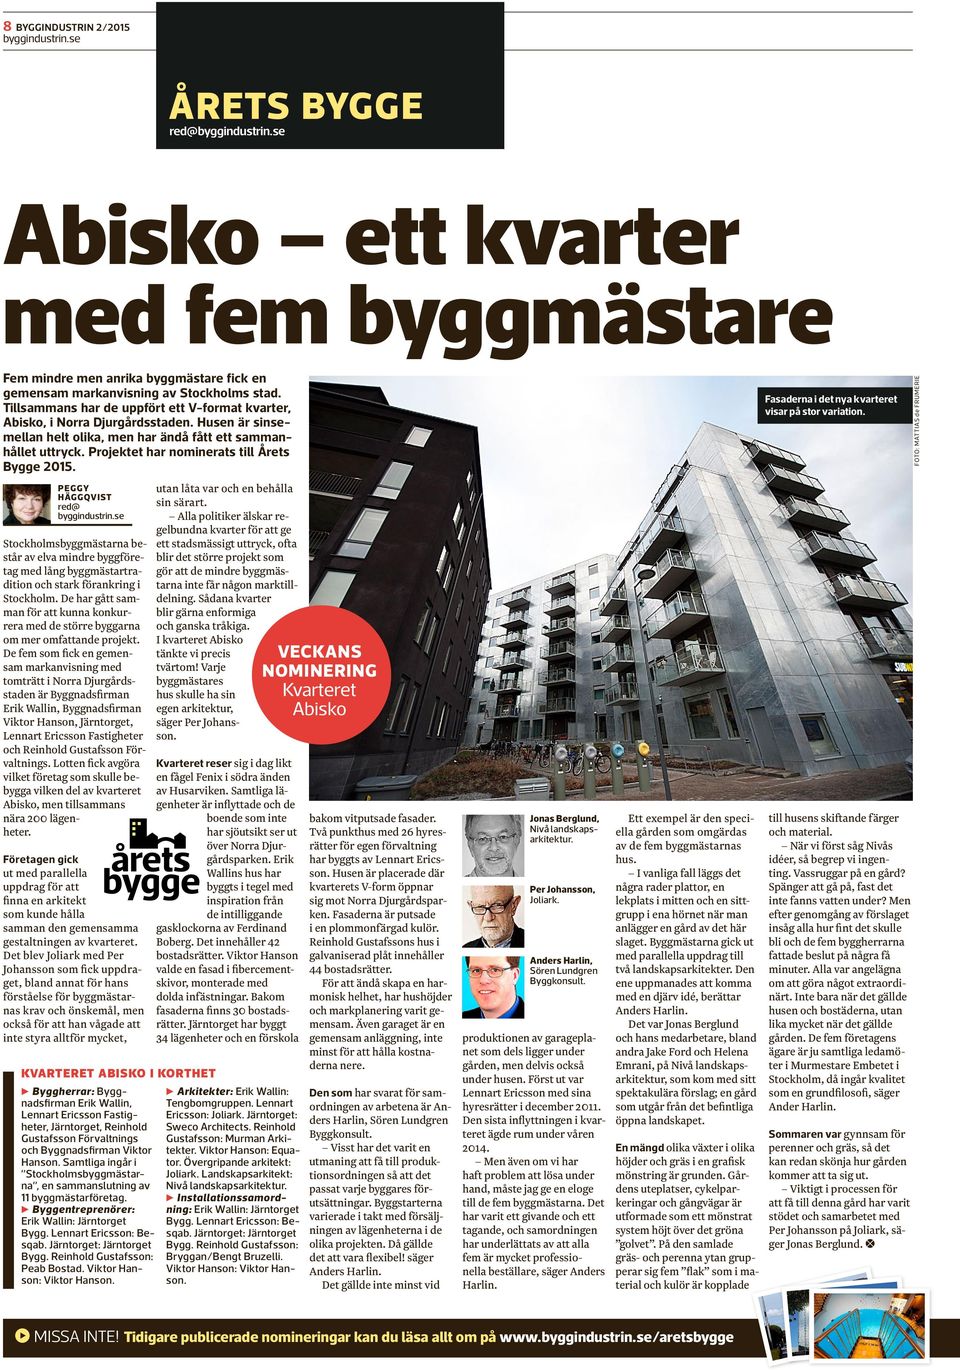 Projektet har nominerats till Årets Bygge 2015. peggy häggqvist red@ Stockholmsbyggmästarna består av elva mindre byggföretag med lång byggmästartradition och stark förankring i Stockholm.